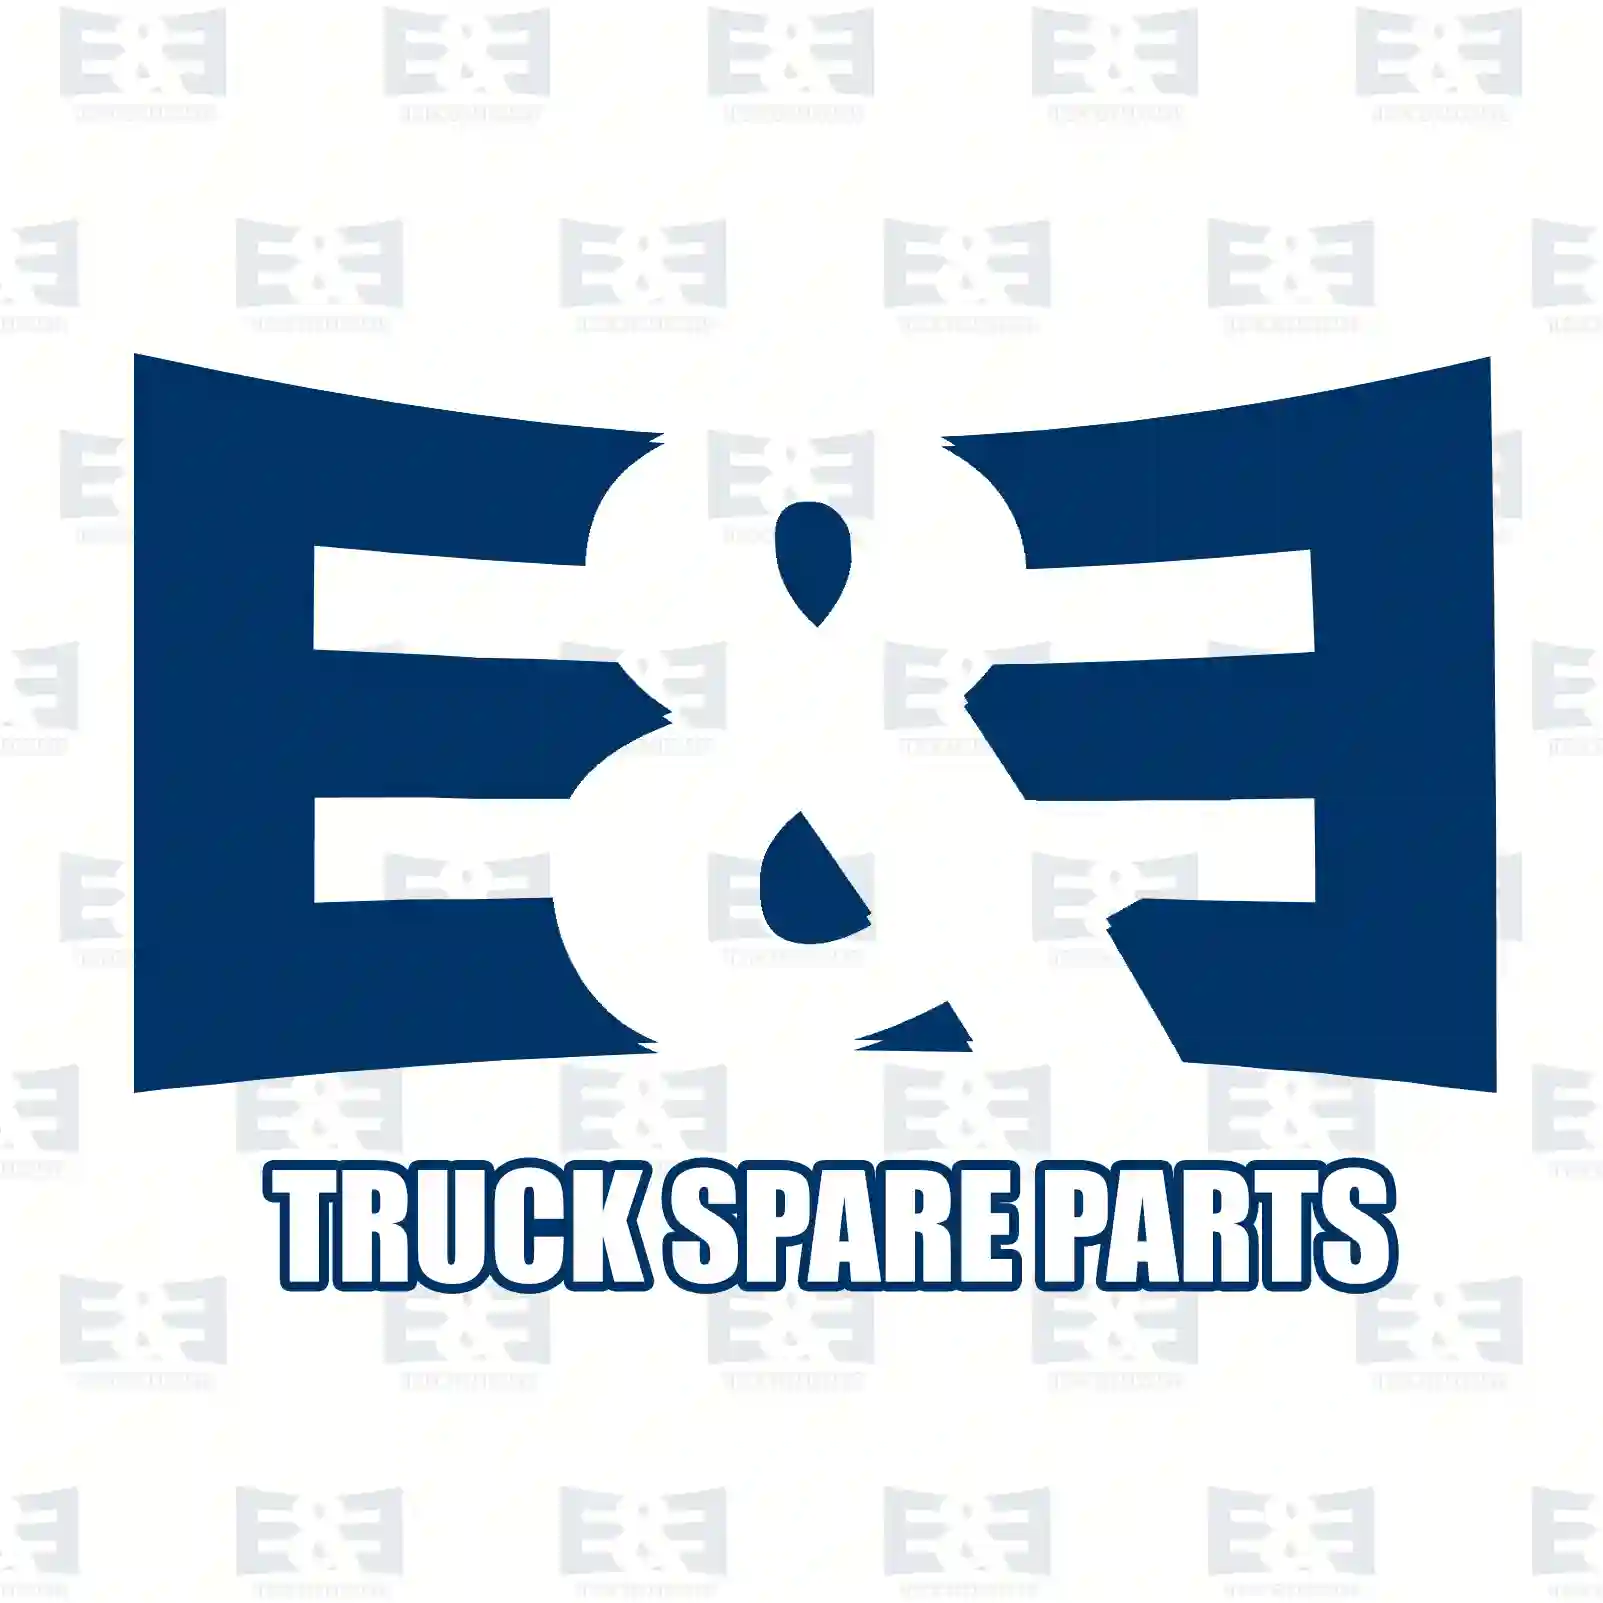 Brake drum, 2E2294357, 02476108, 2476108, 42003912, , , , ||  2E2294357 E&E Truck Spare Parts | Truck Spare Parts, Auotomotive Spare Parts Brake drum, 2E2294357, 02476108, 2476108, 42003912, , , , ||  2E2294357 E&E Truck Spare Parts | Truck Spare Parts, Auotomotive Spare Parts